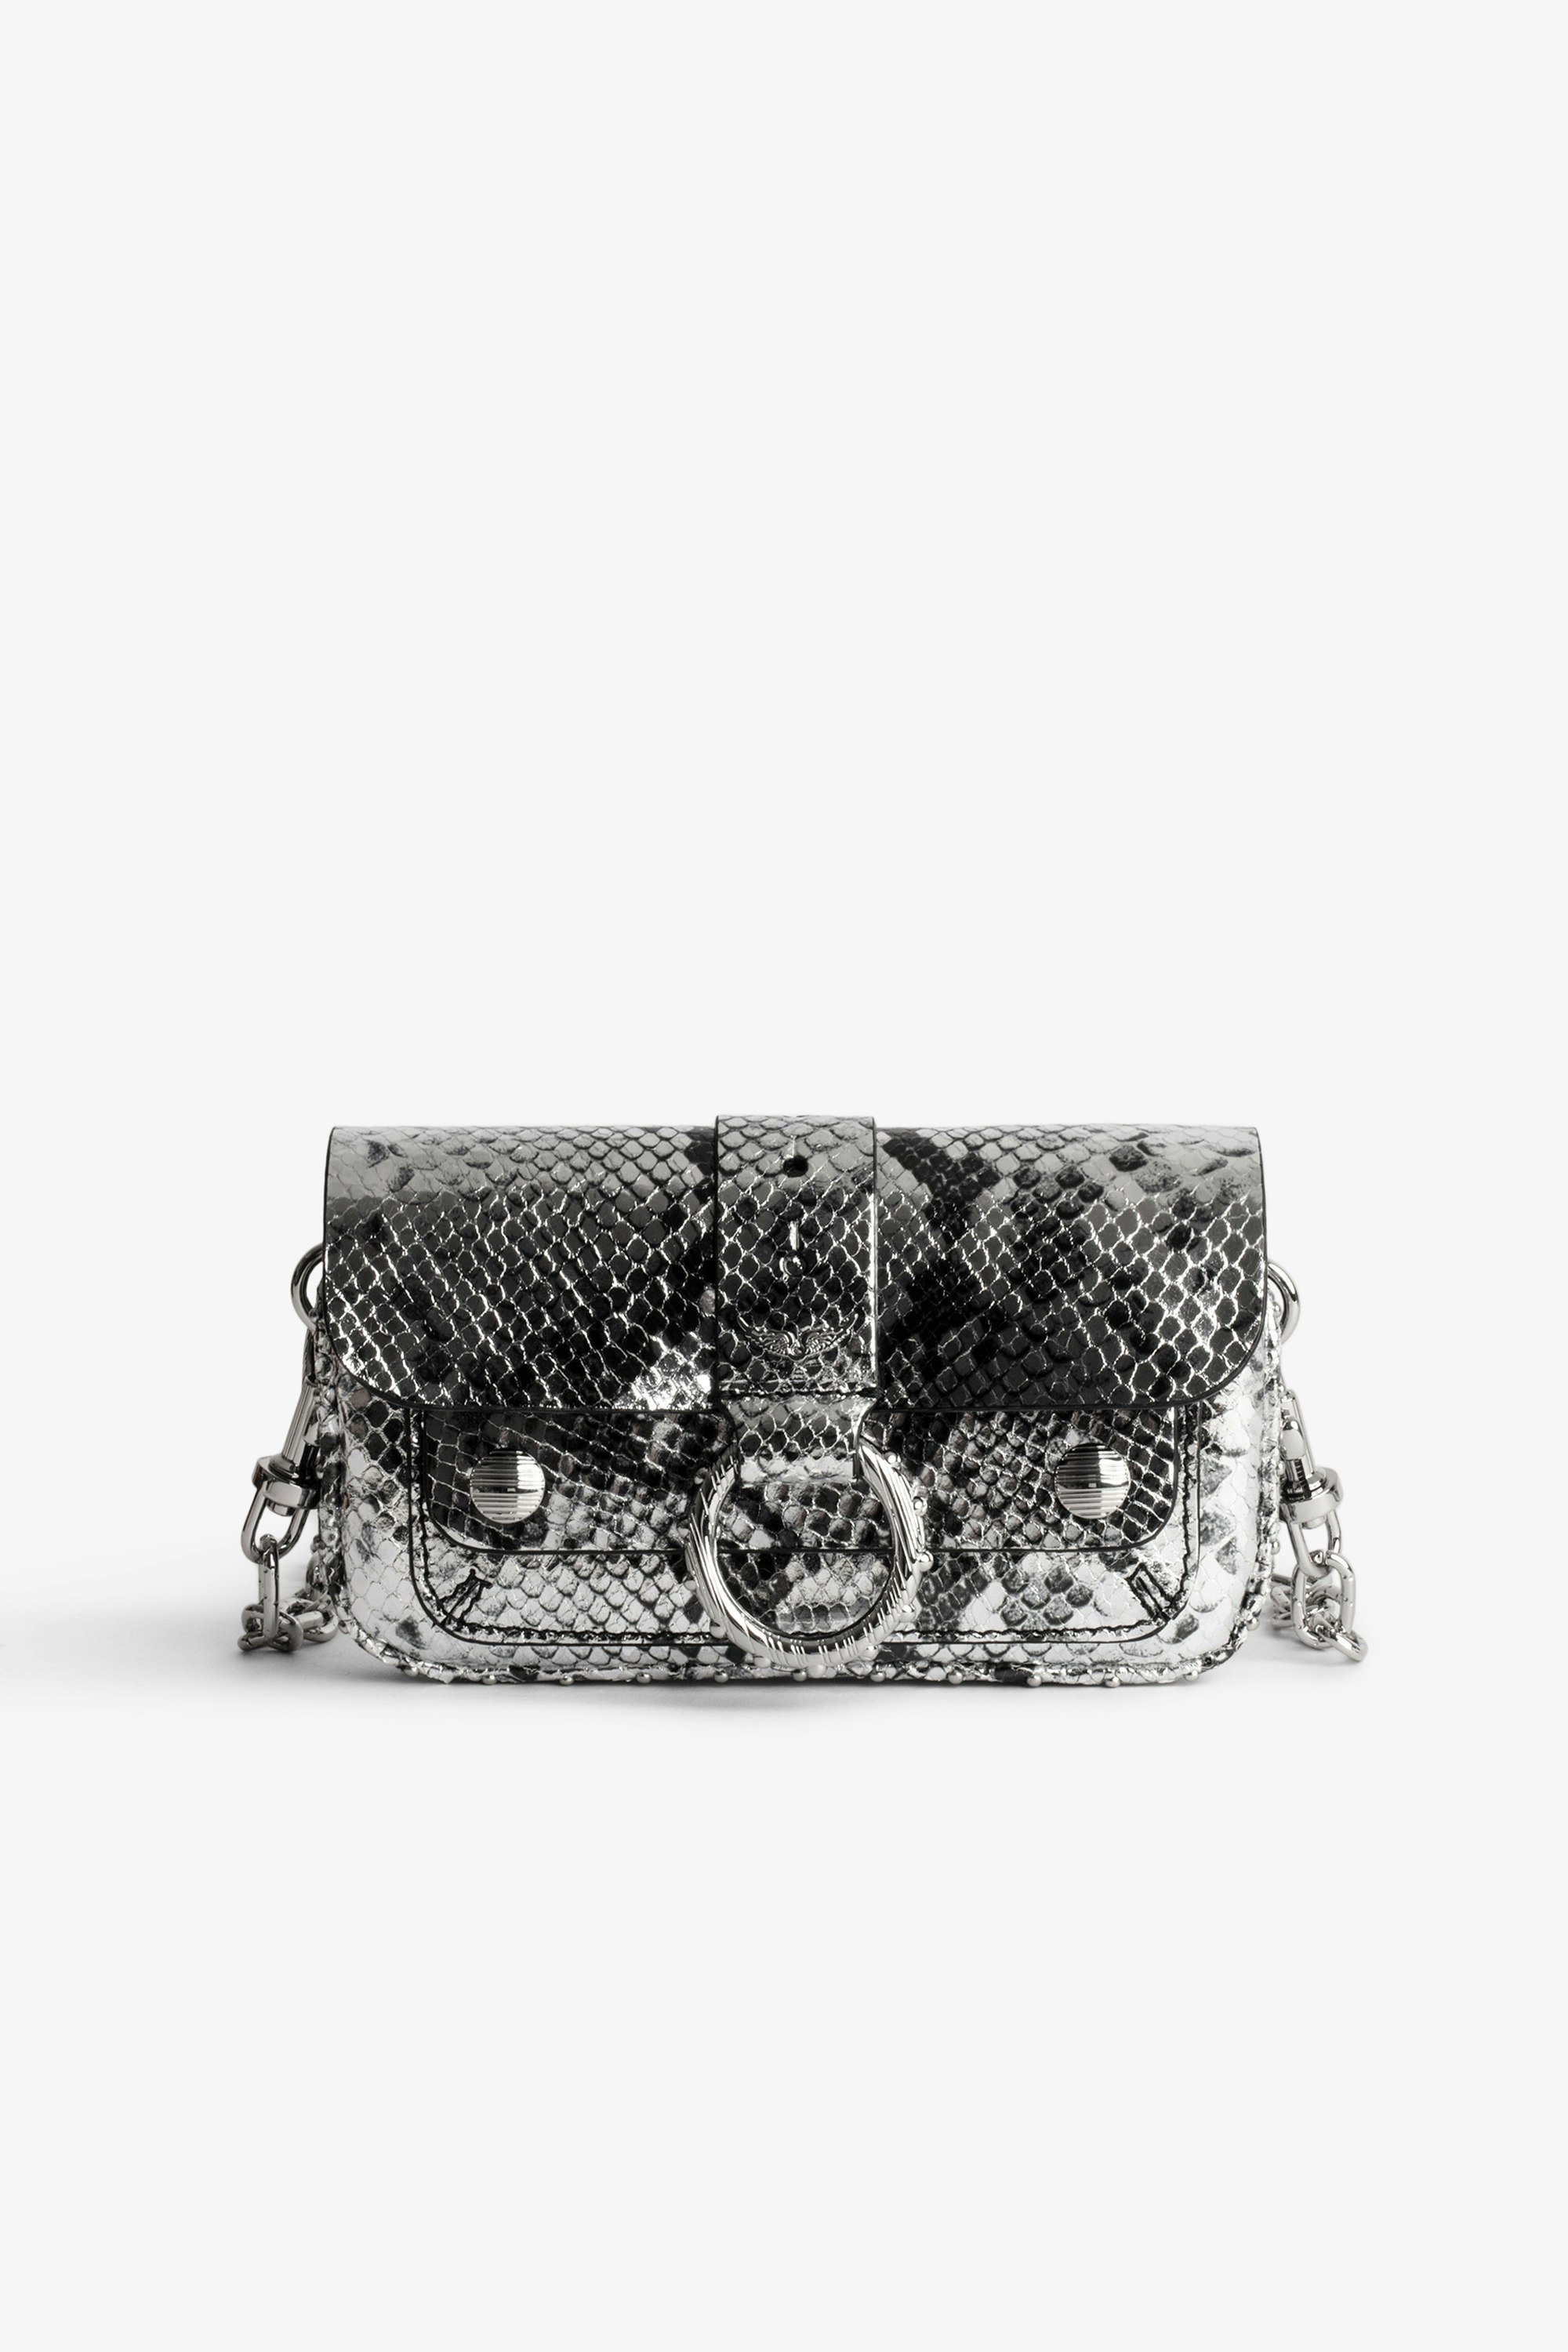 Tasche Kate Wallet Damentasche aus silberfarbenem Metallic-Leder in Schlangenoptik mit Schulterriemen und Klappe